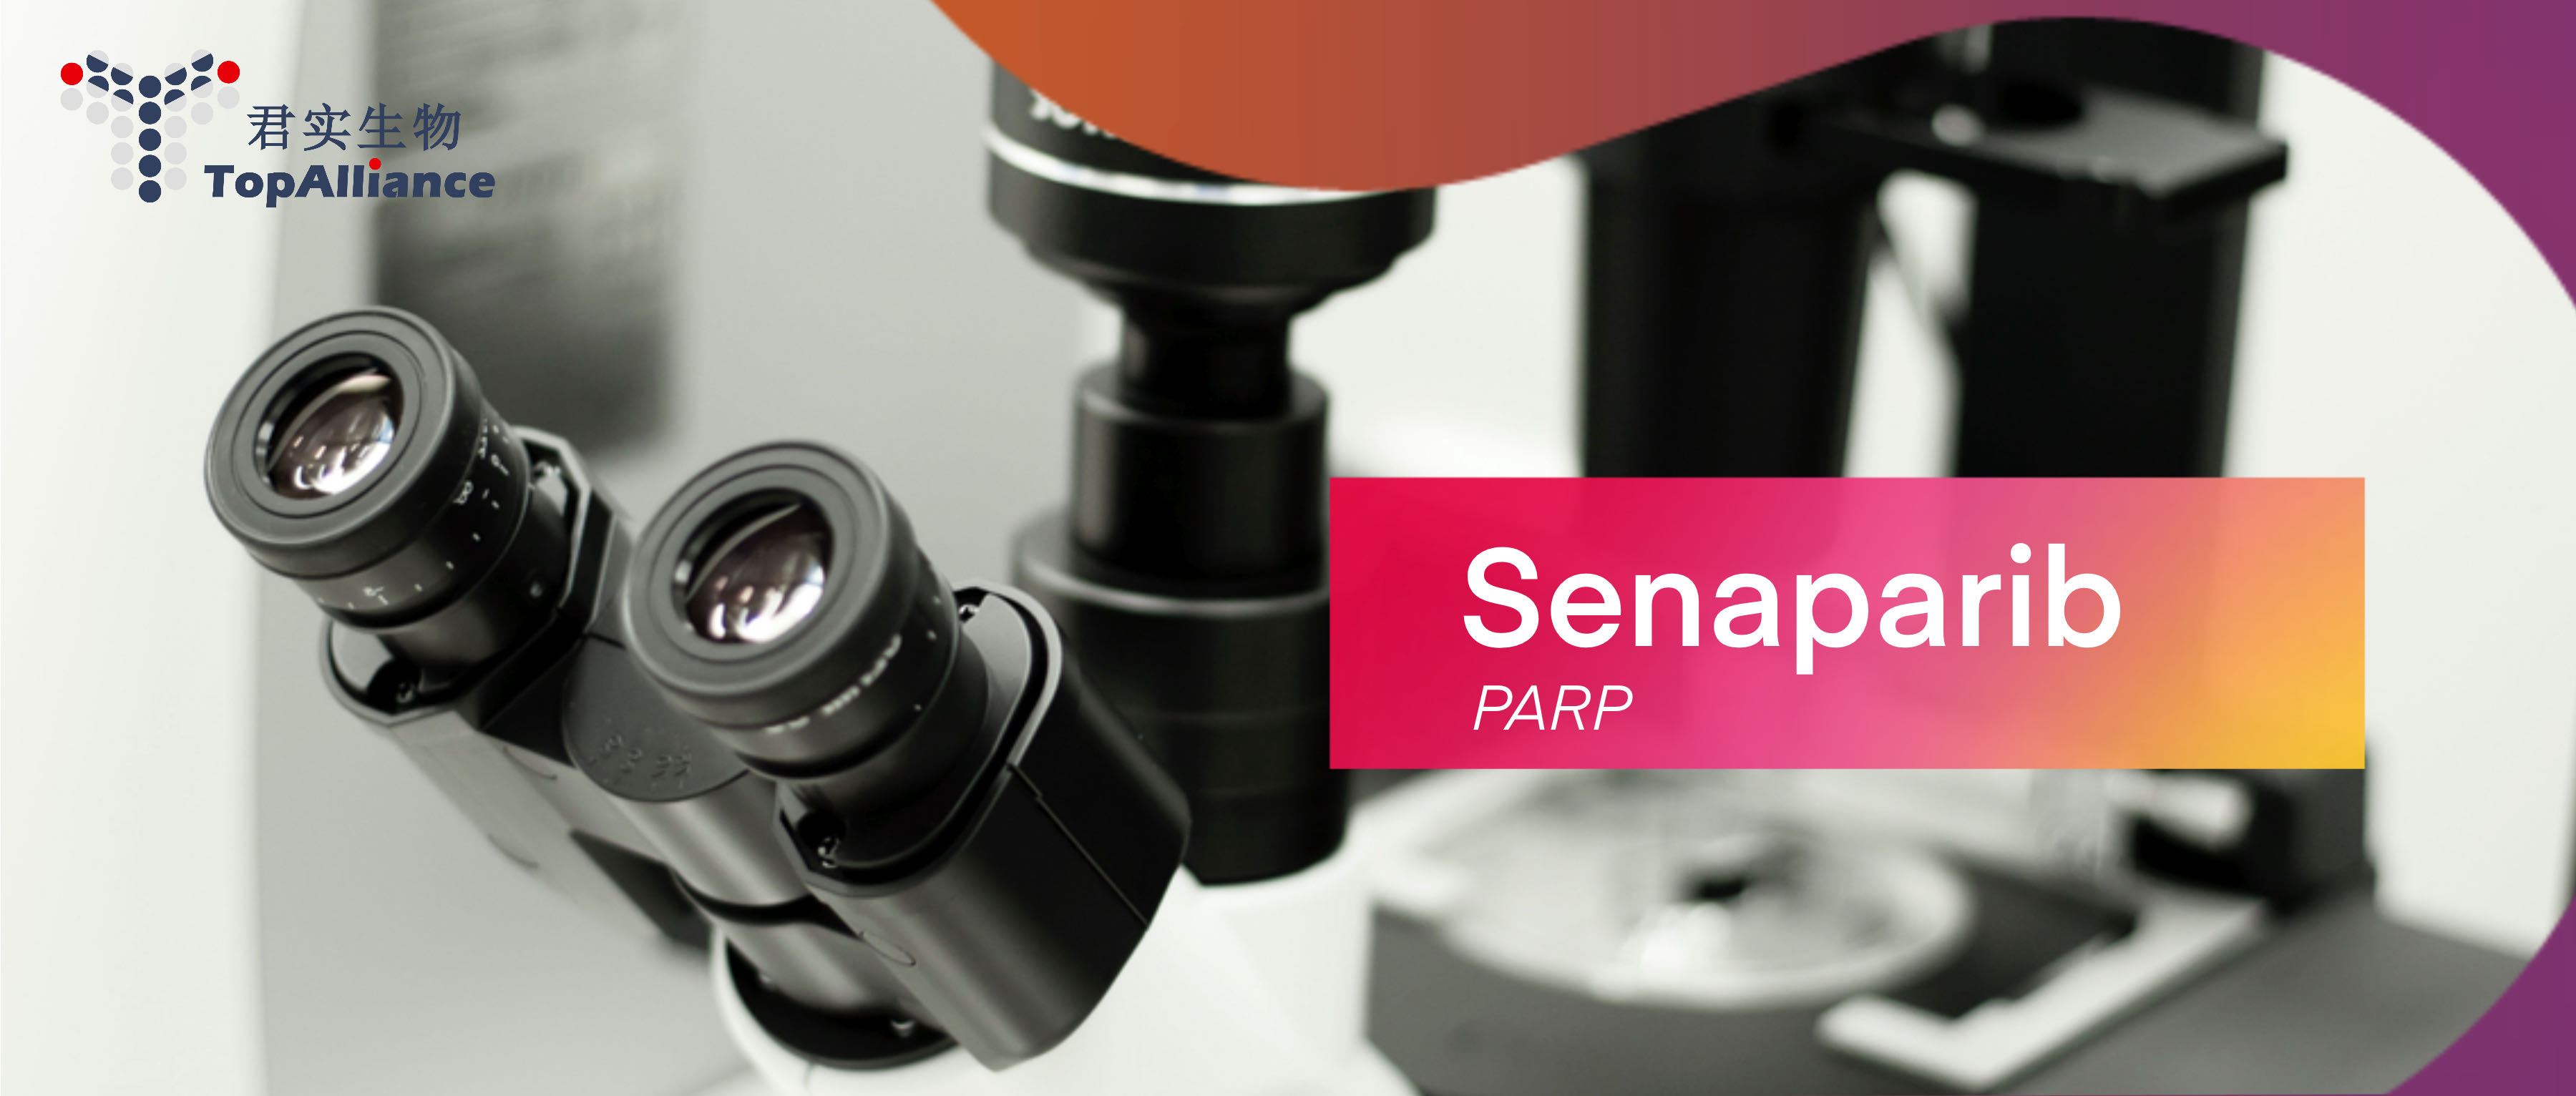 君实生物PARP抑制剂senaparib用于晚期卵巢<font color="red">癌</font>全人群一线维持治疗的III期临床研究达到主要研究终点